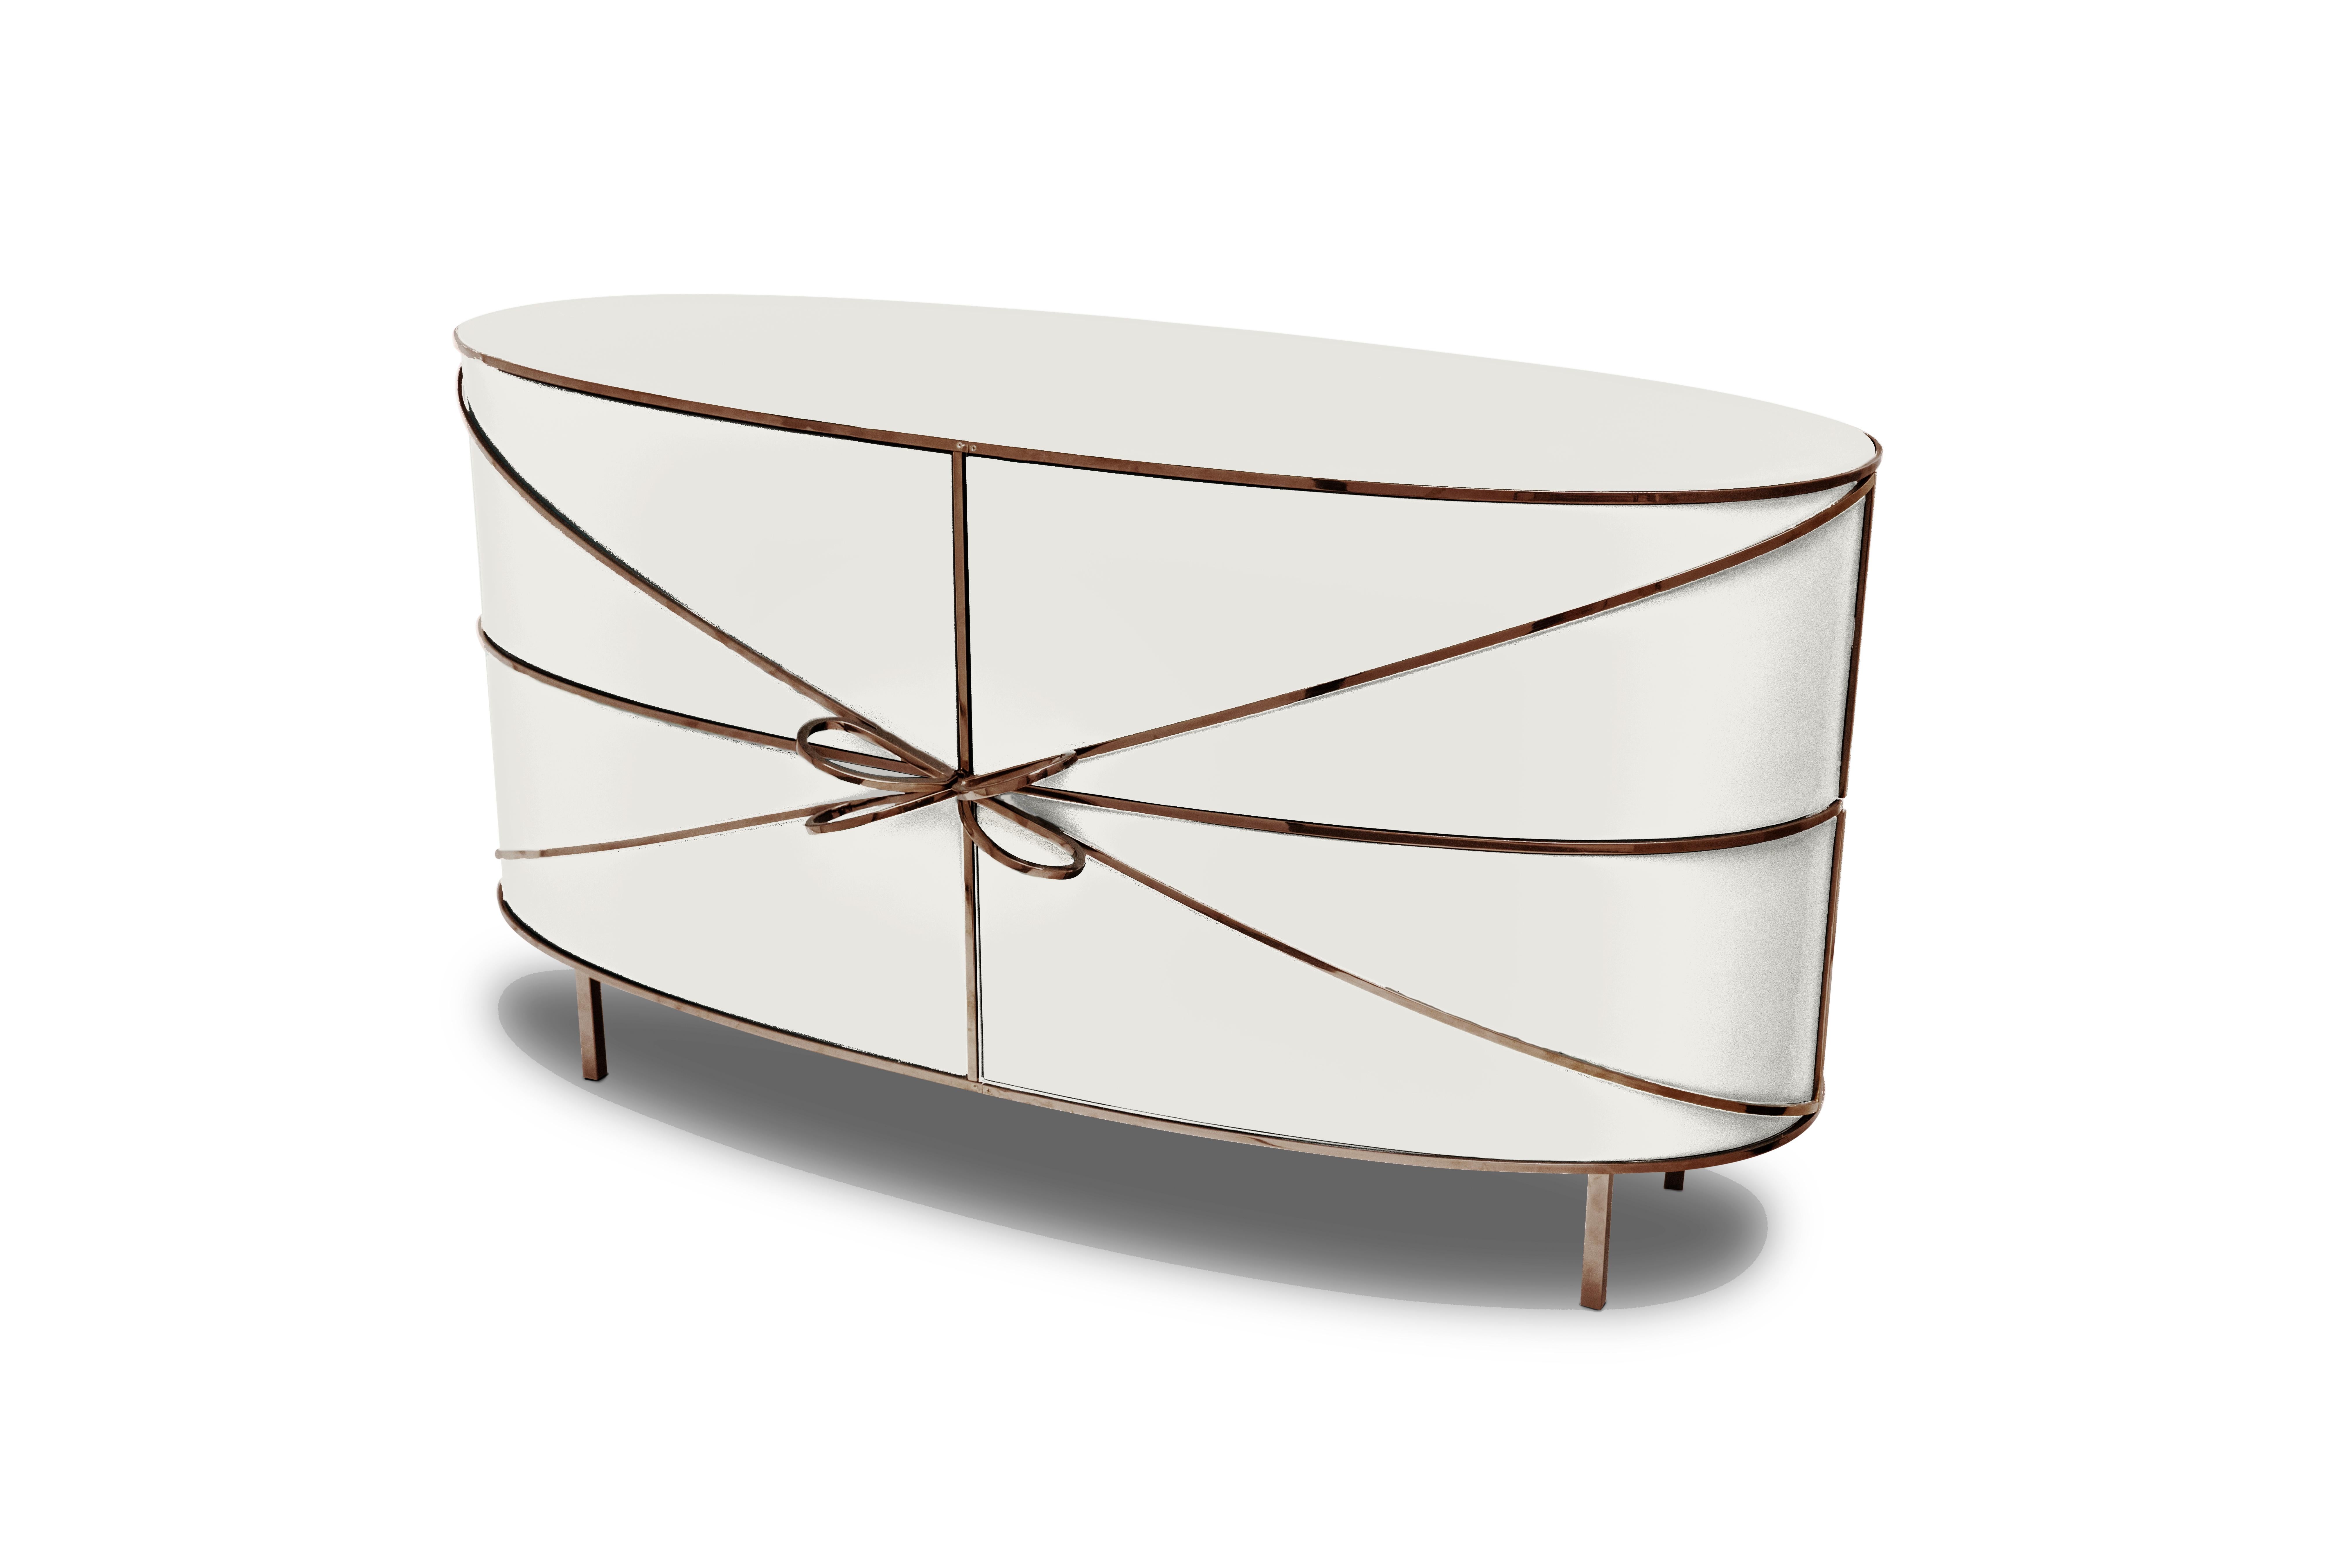 88 Secrets White Sideboard with Rose Gold Trims de Nika Zupanc est un meuble blanc immaculé aux lignes sensuelles et féminines avec de luxueuses garnitures en métal rose. Une pièce maîtresse dans tout espace intérieur !

Nika Zupanc, designer